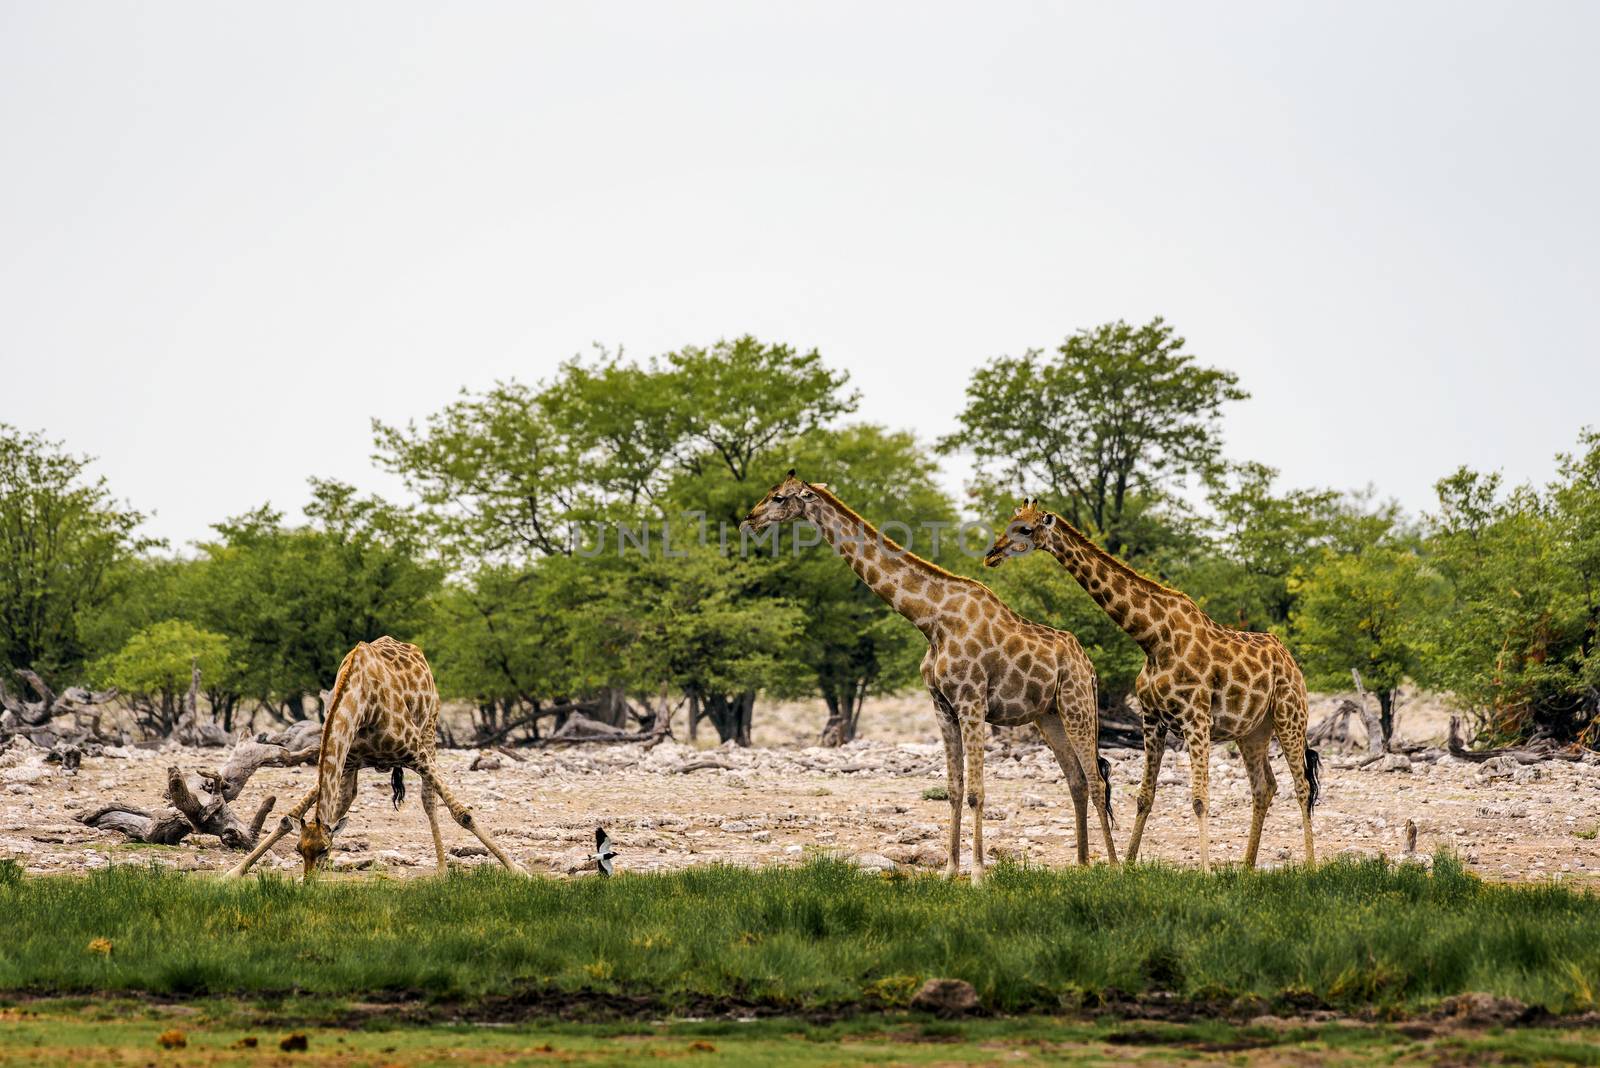 Giraffes drink water from a waterhole in Etosha National Park by nickfox